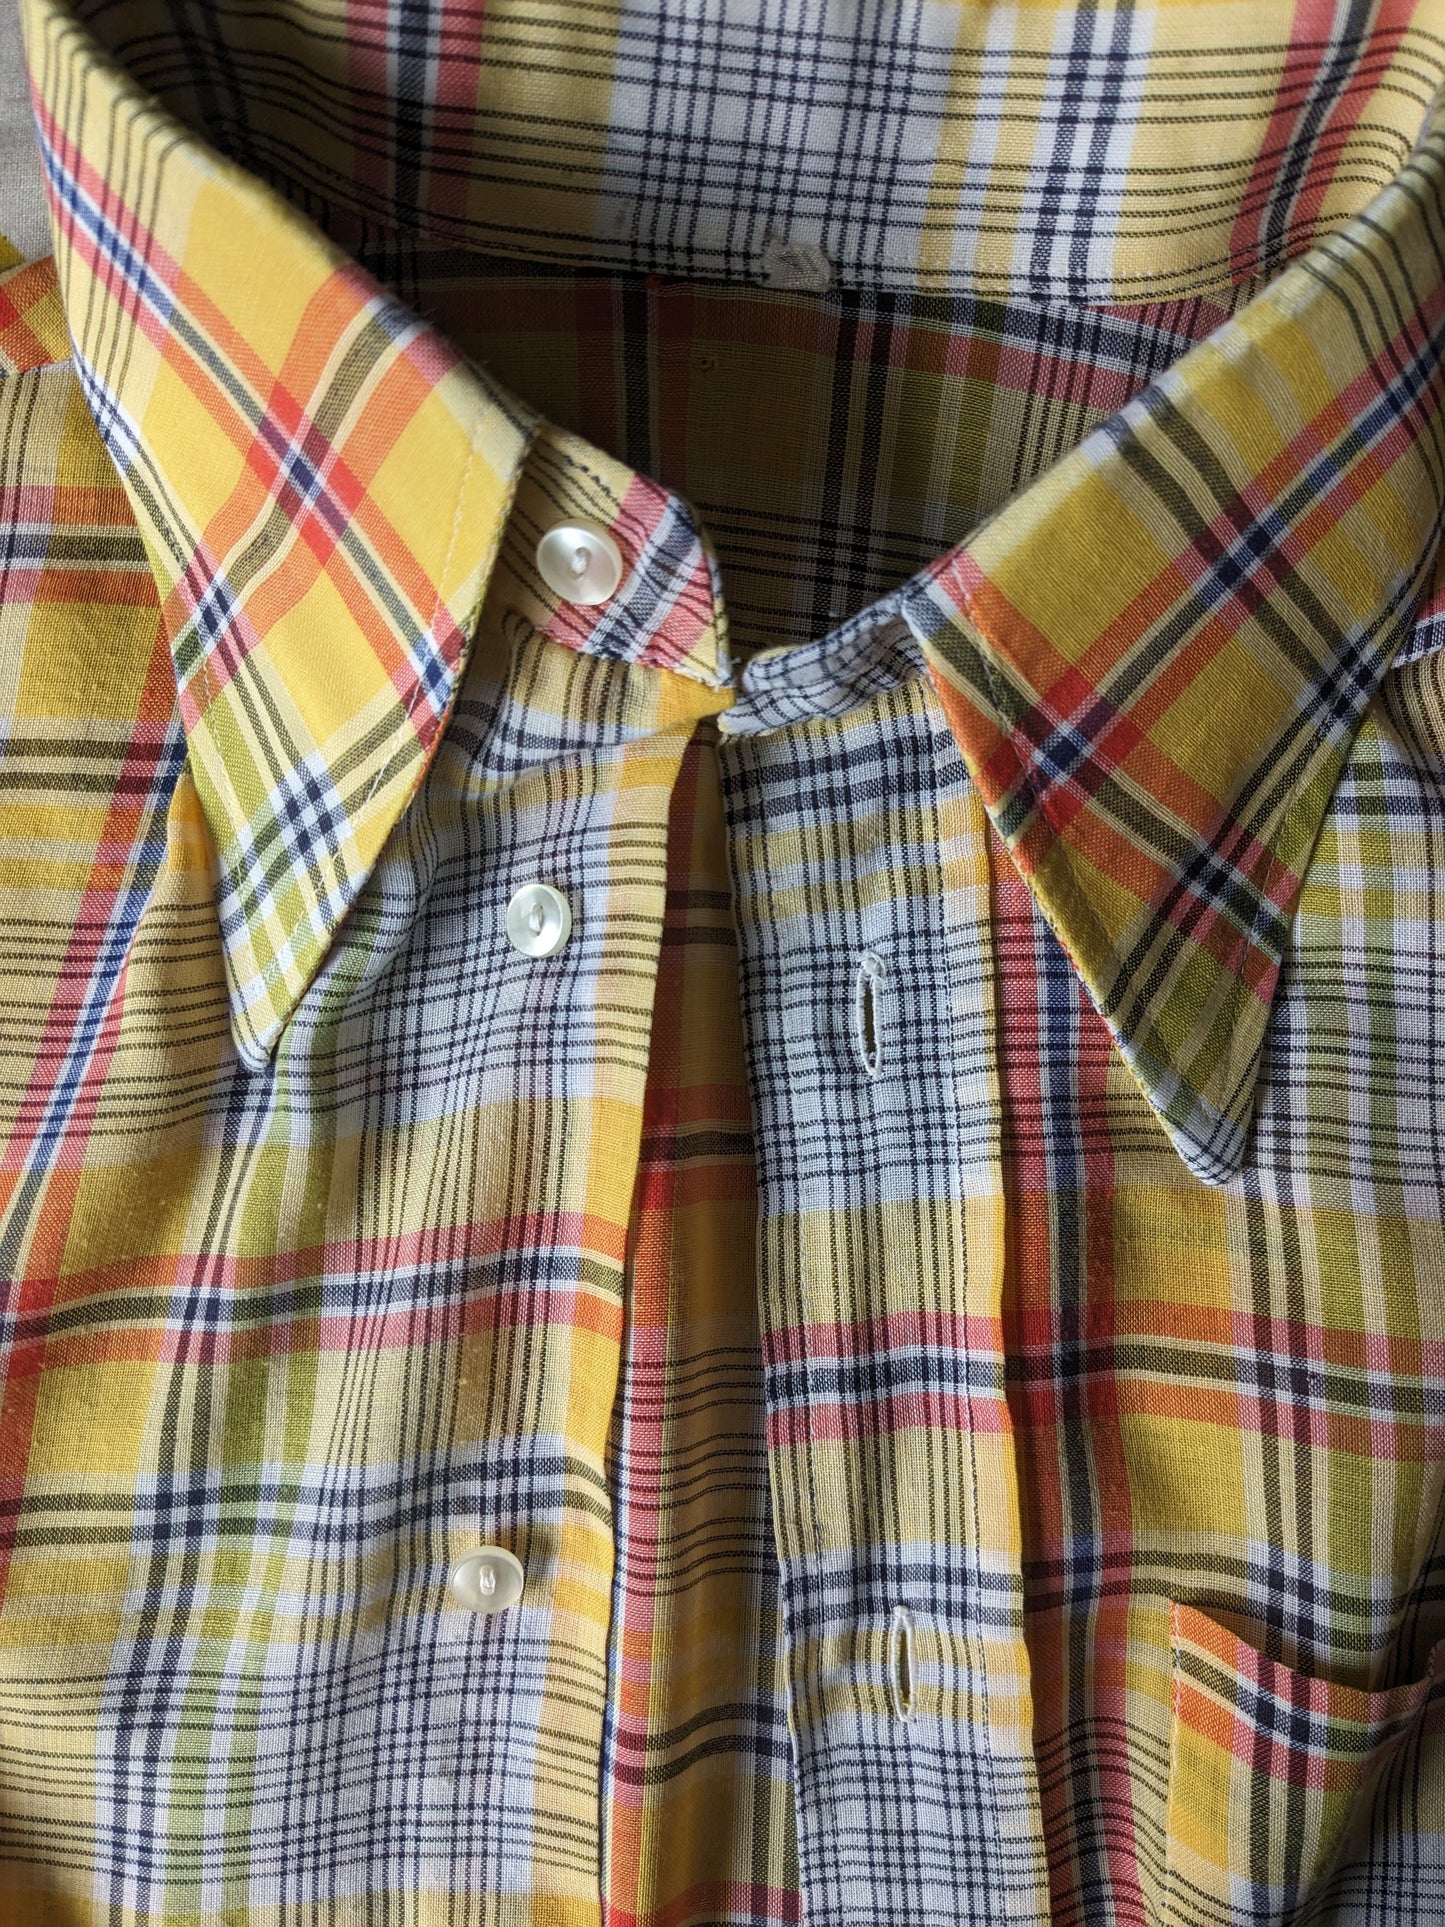 Sleeve corta della camicia degli anni '70 vintage con colletto punti. A scacchi di verde rosso giallo. Taglia M.